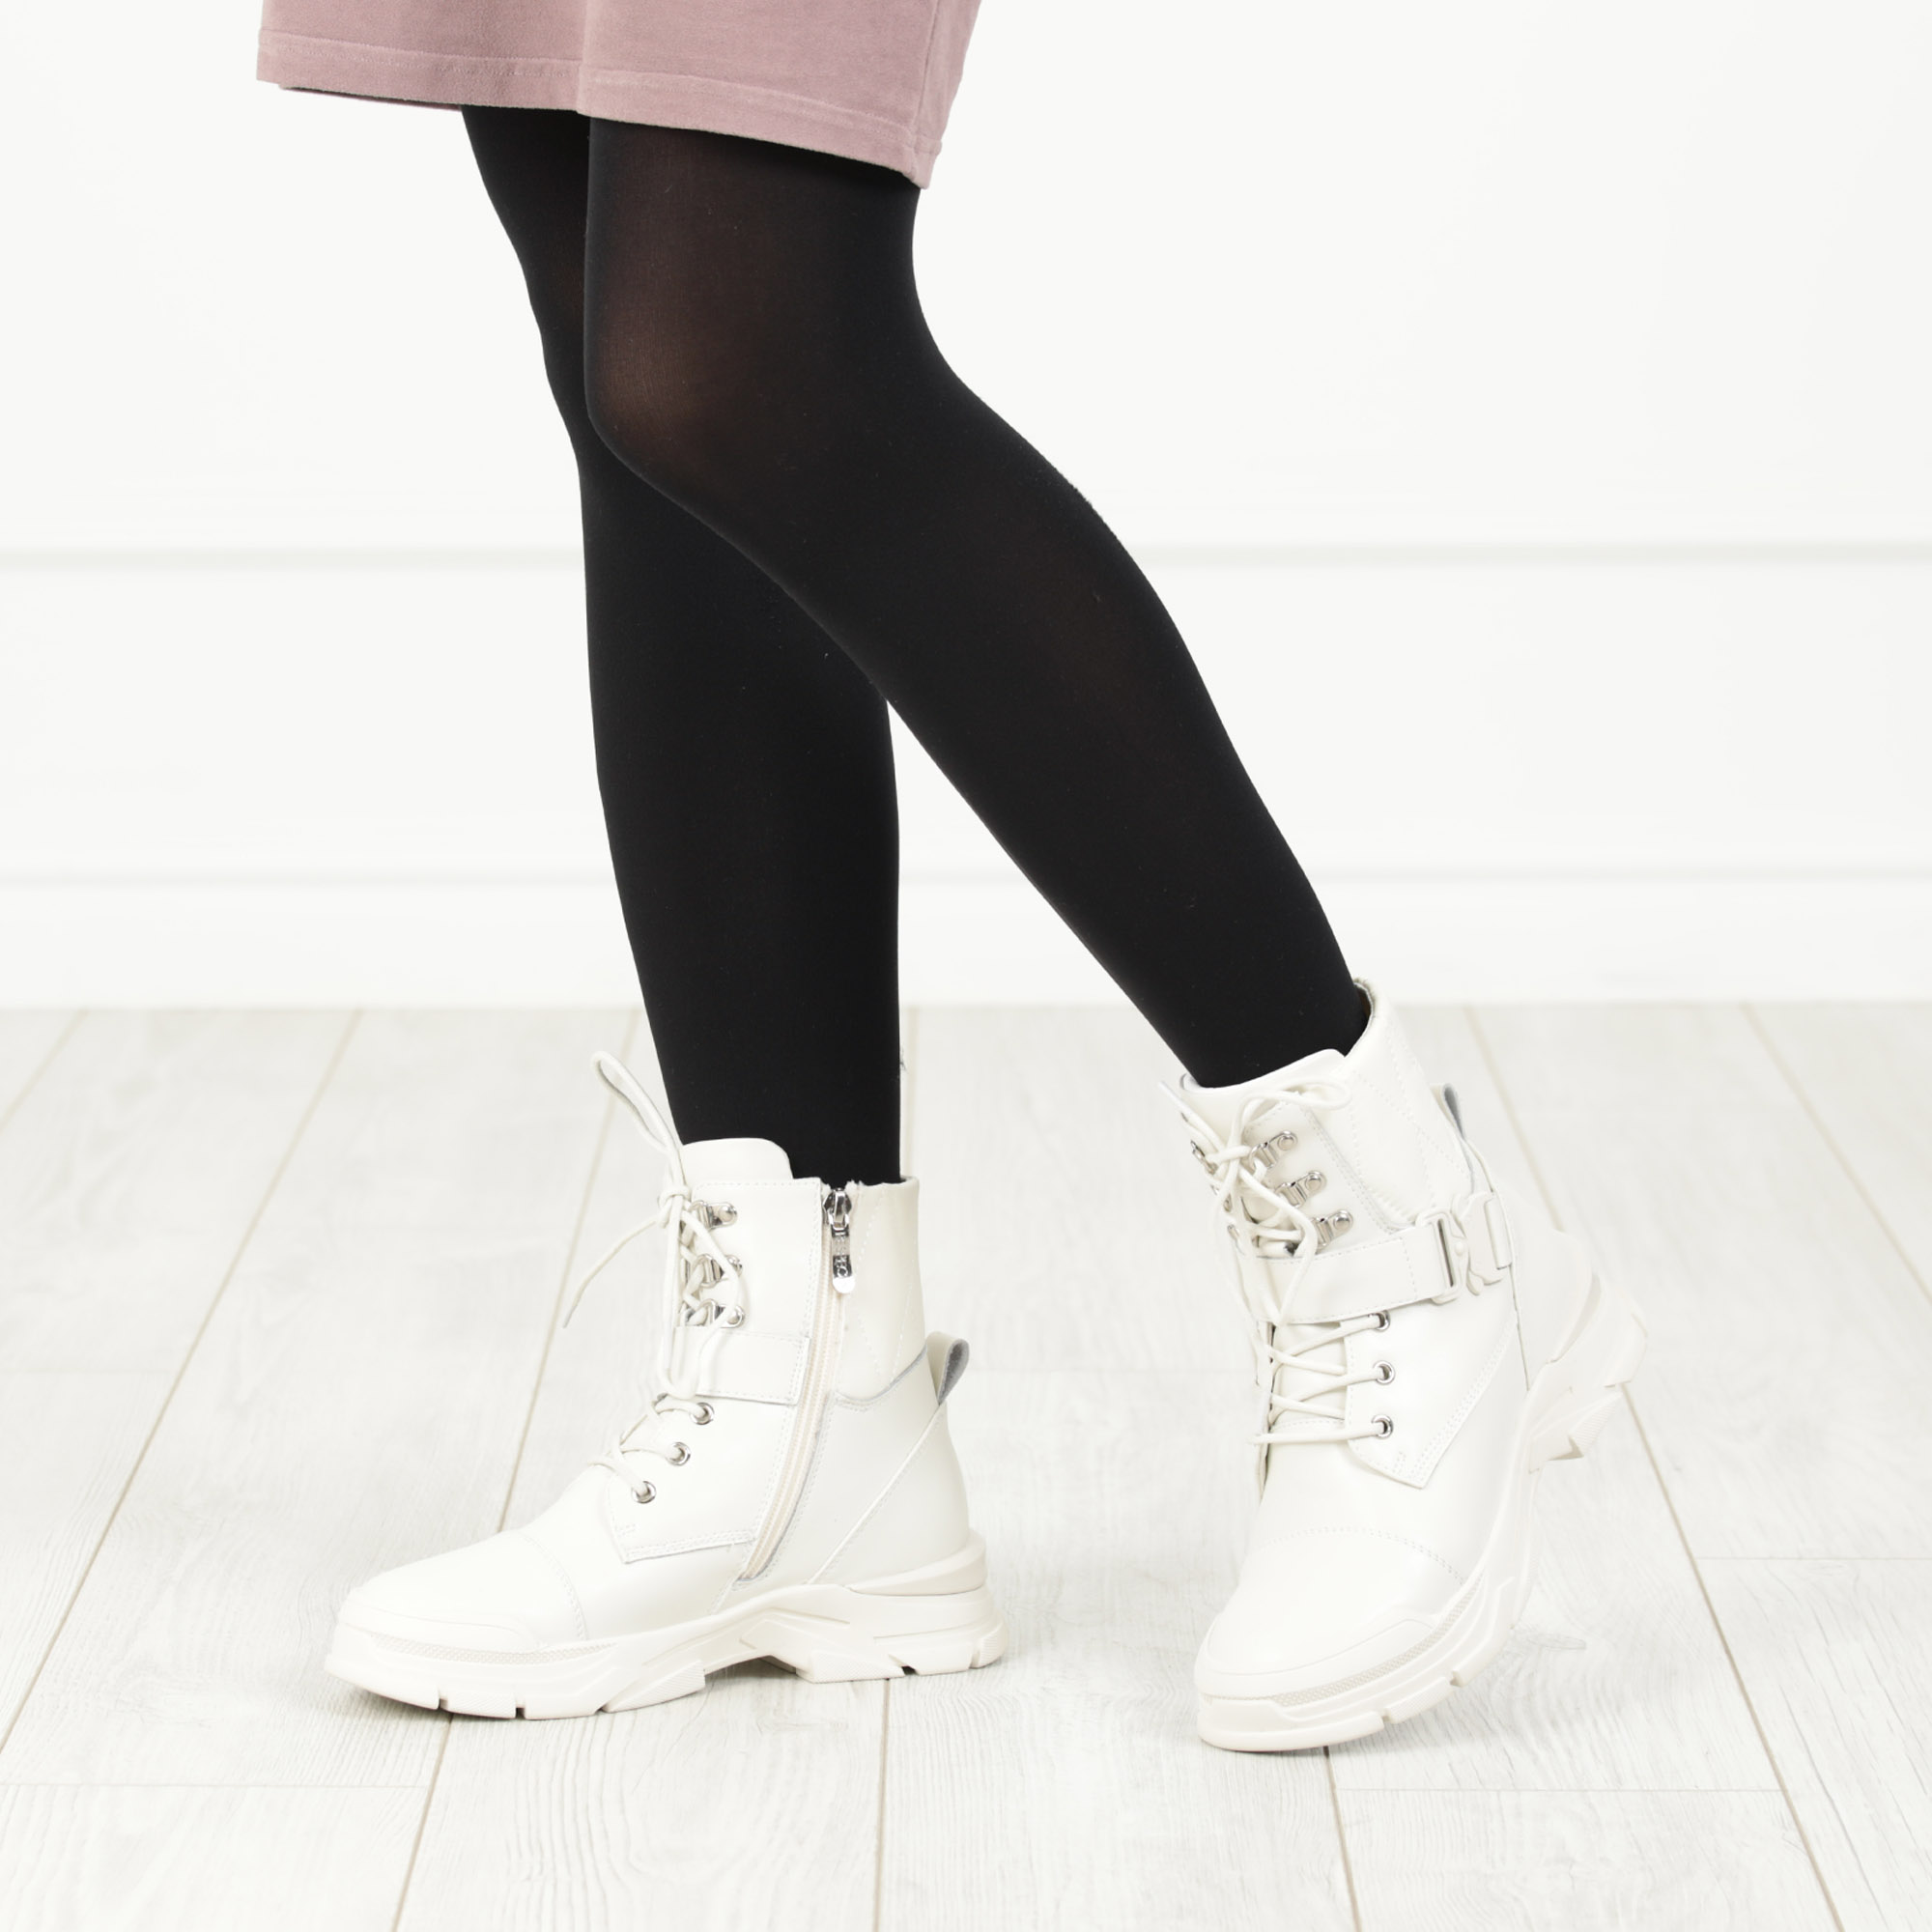 Спортивные ботинки рисового цвета на шнуровке с ремнем из комбинированных материалов на подкладке из натуральной шерсти Respect, размер 37 - фото 2